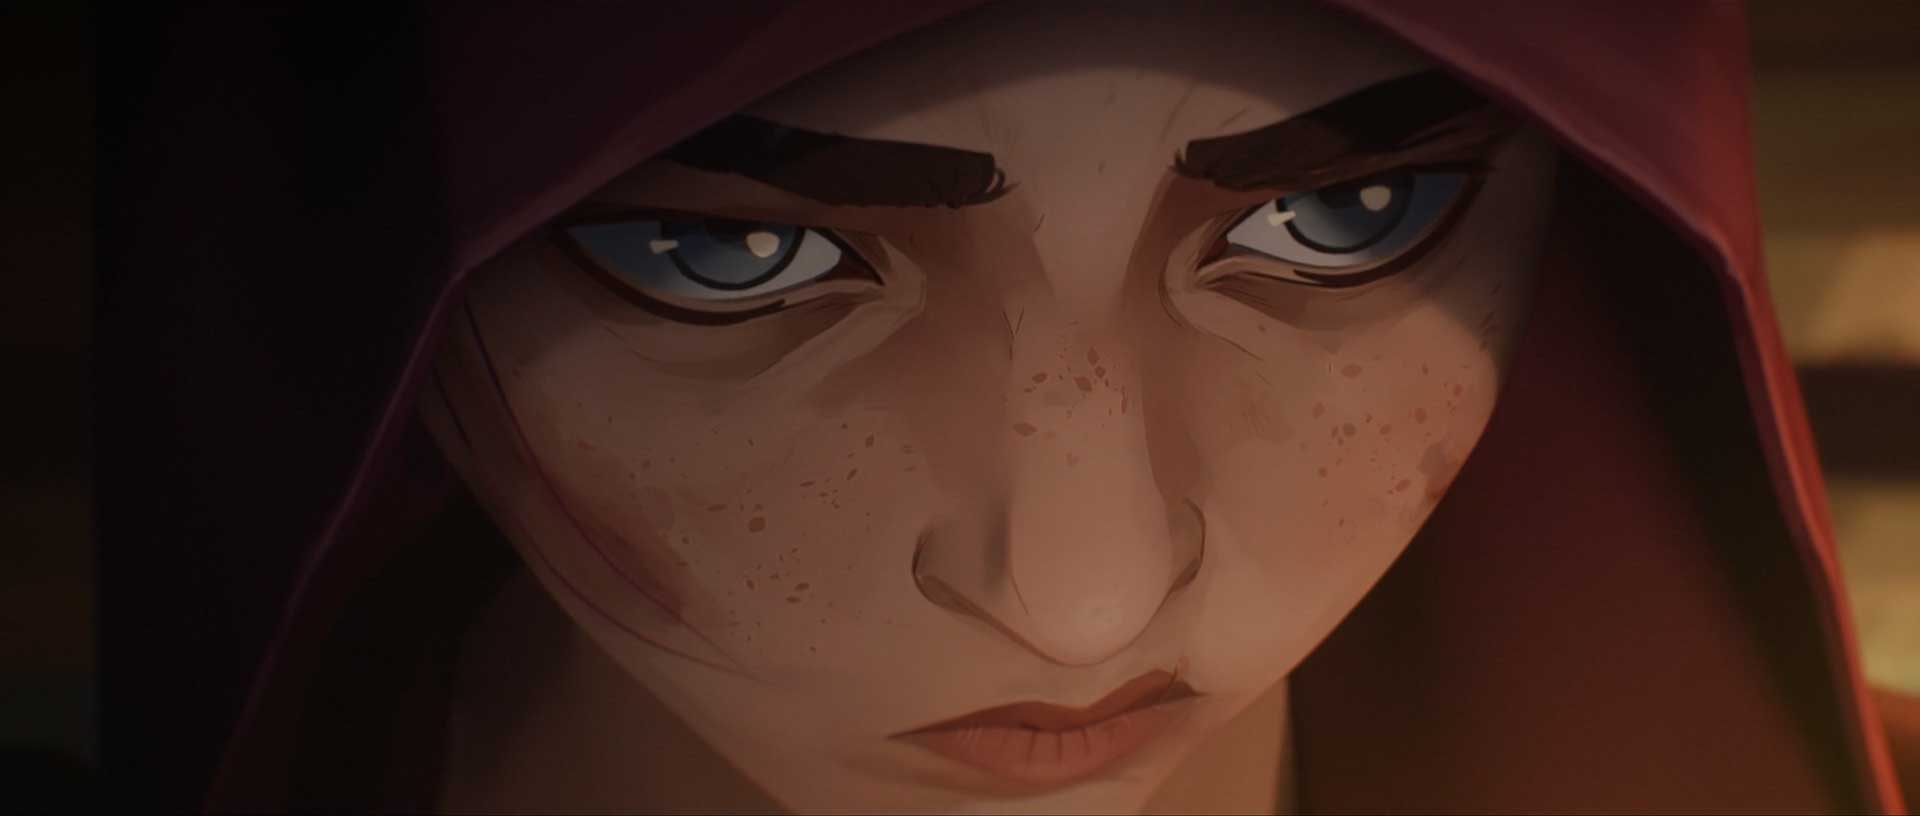 انیمیشن Arcane نتفلیکس و چهره وای در سنین نوجوانی زیر کلاه هودی